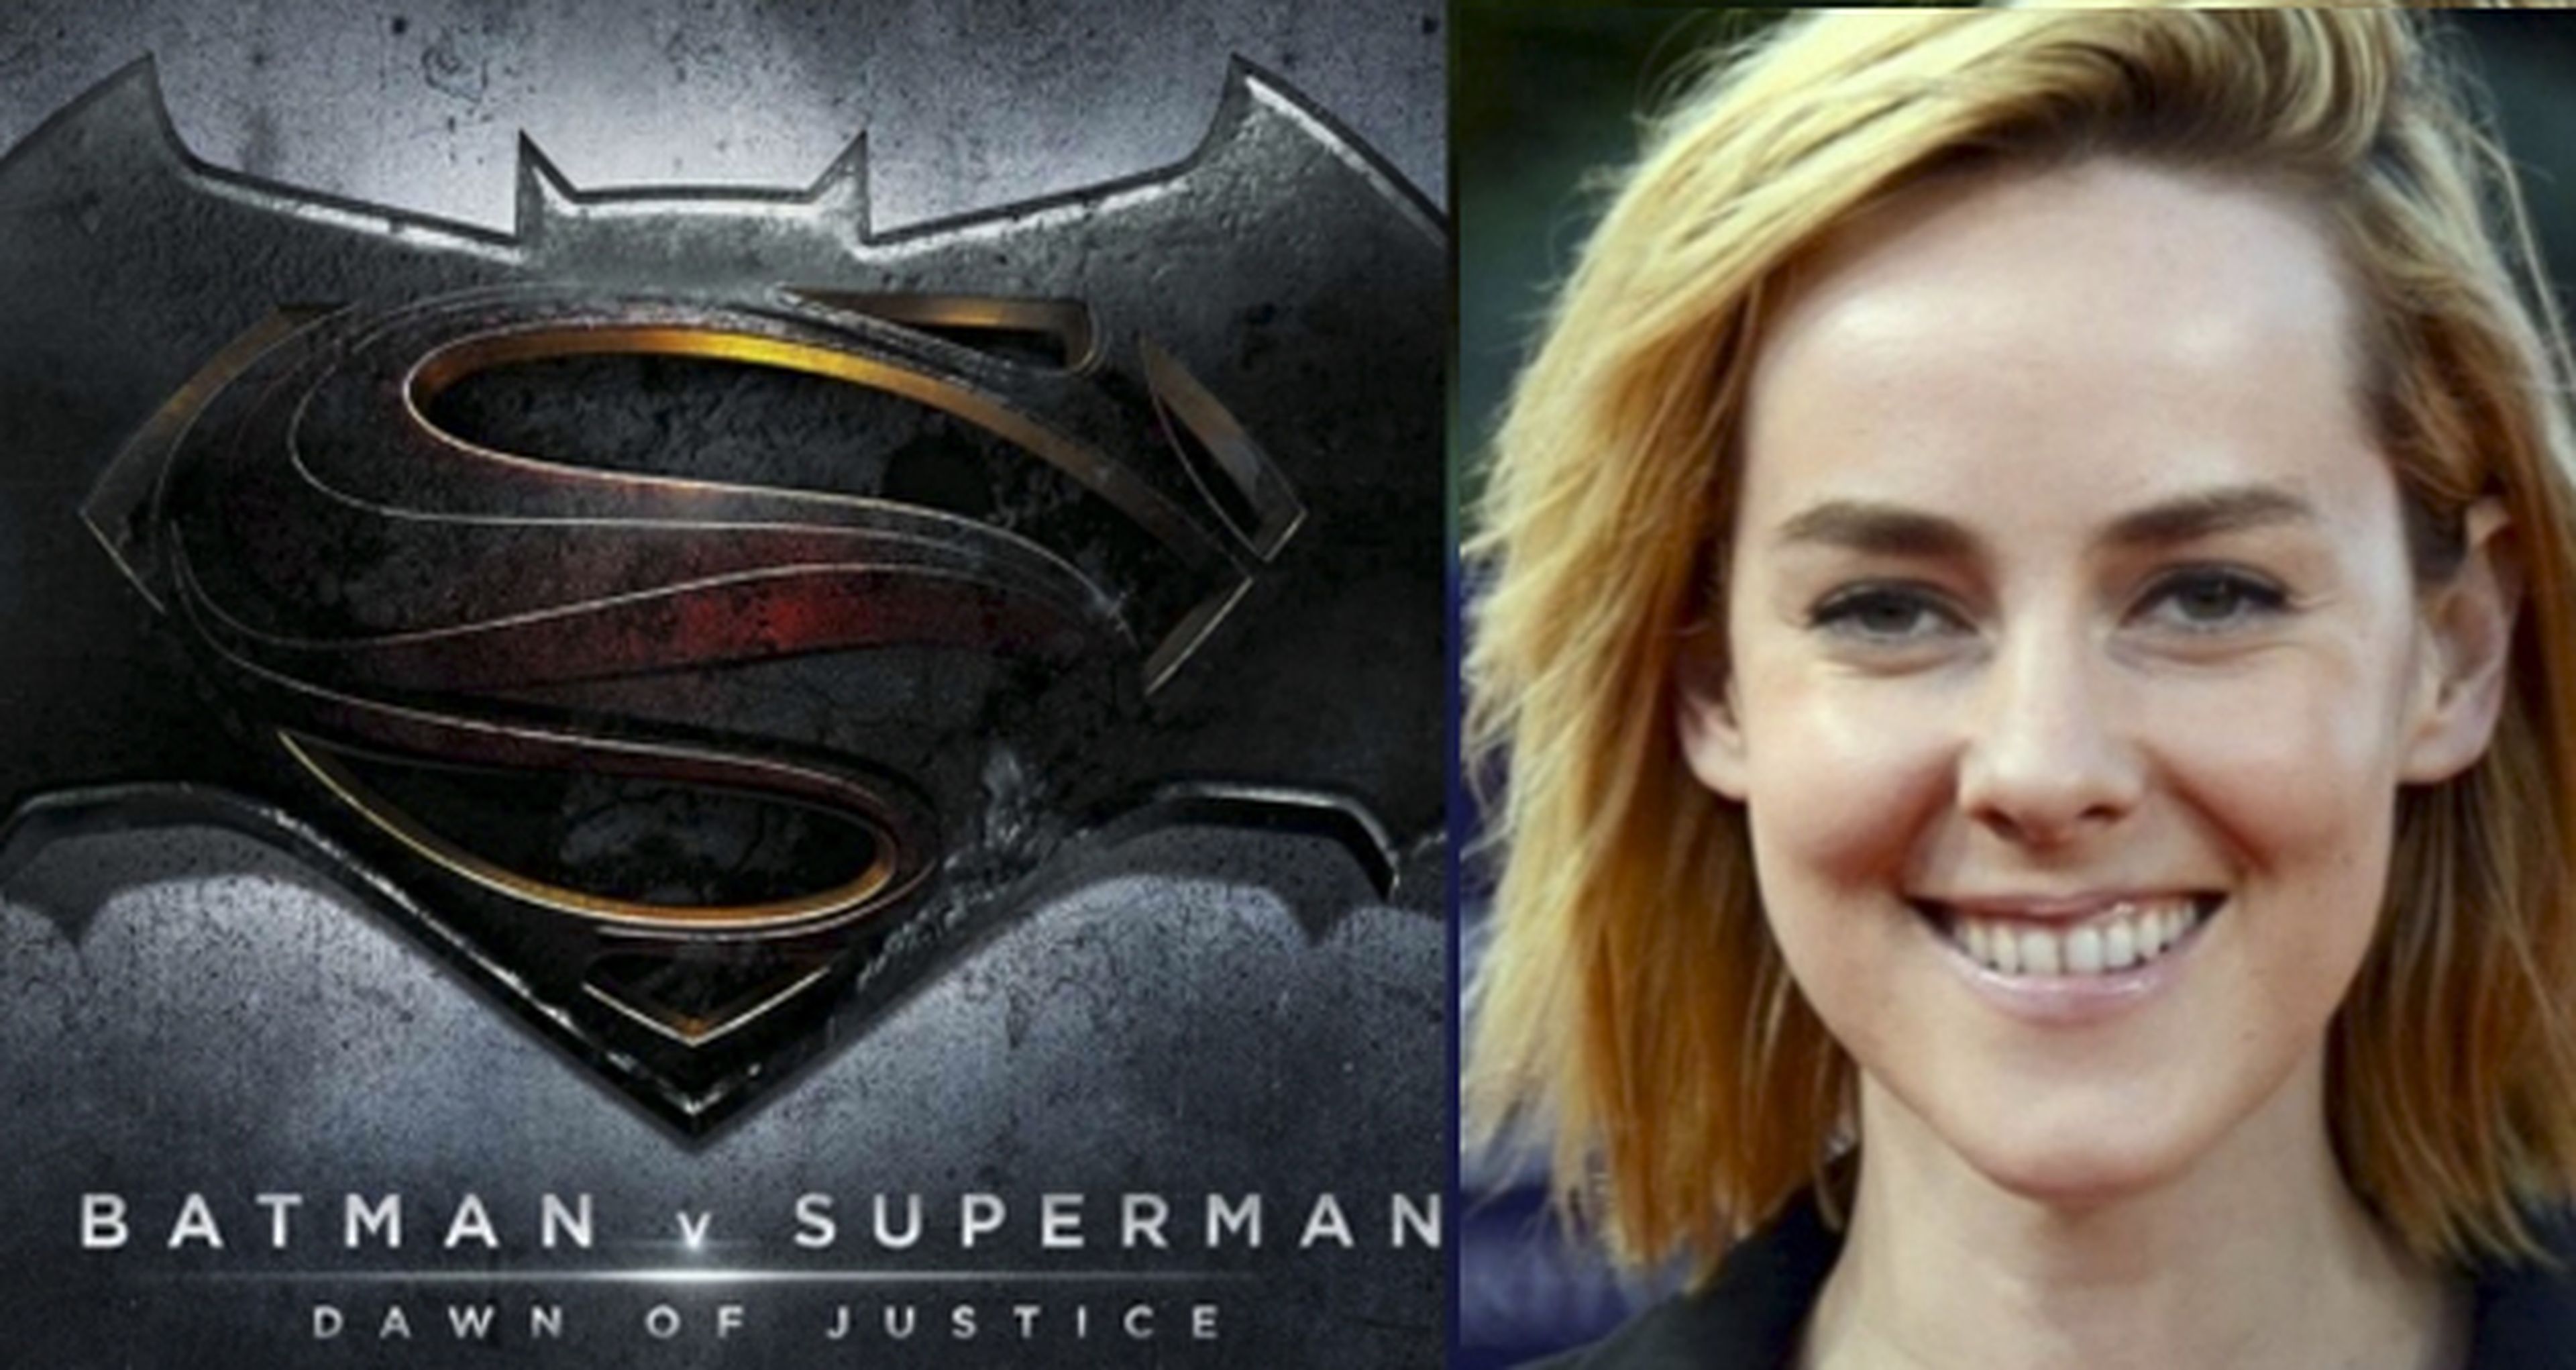 Batman v Superman: Warner revela la identidad de Jena Malone por descuido